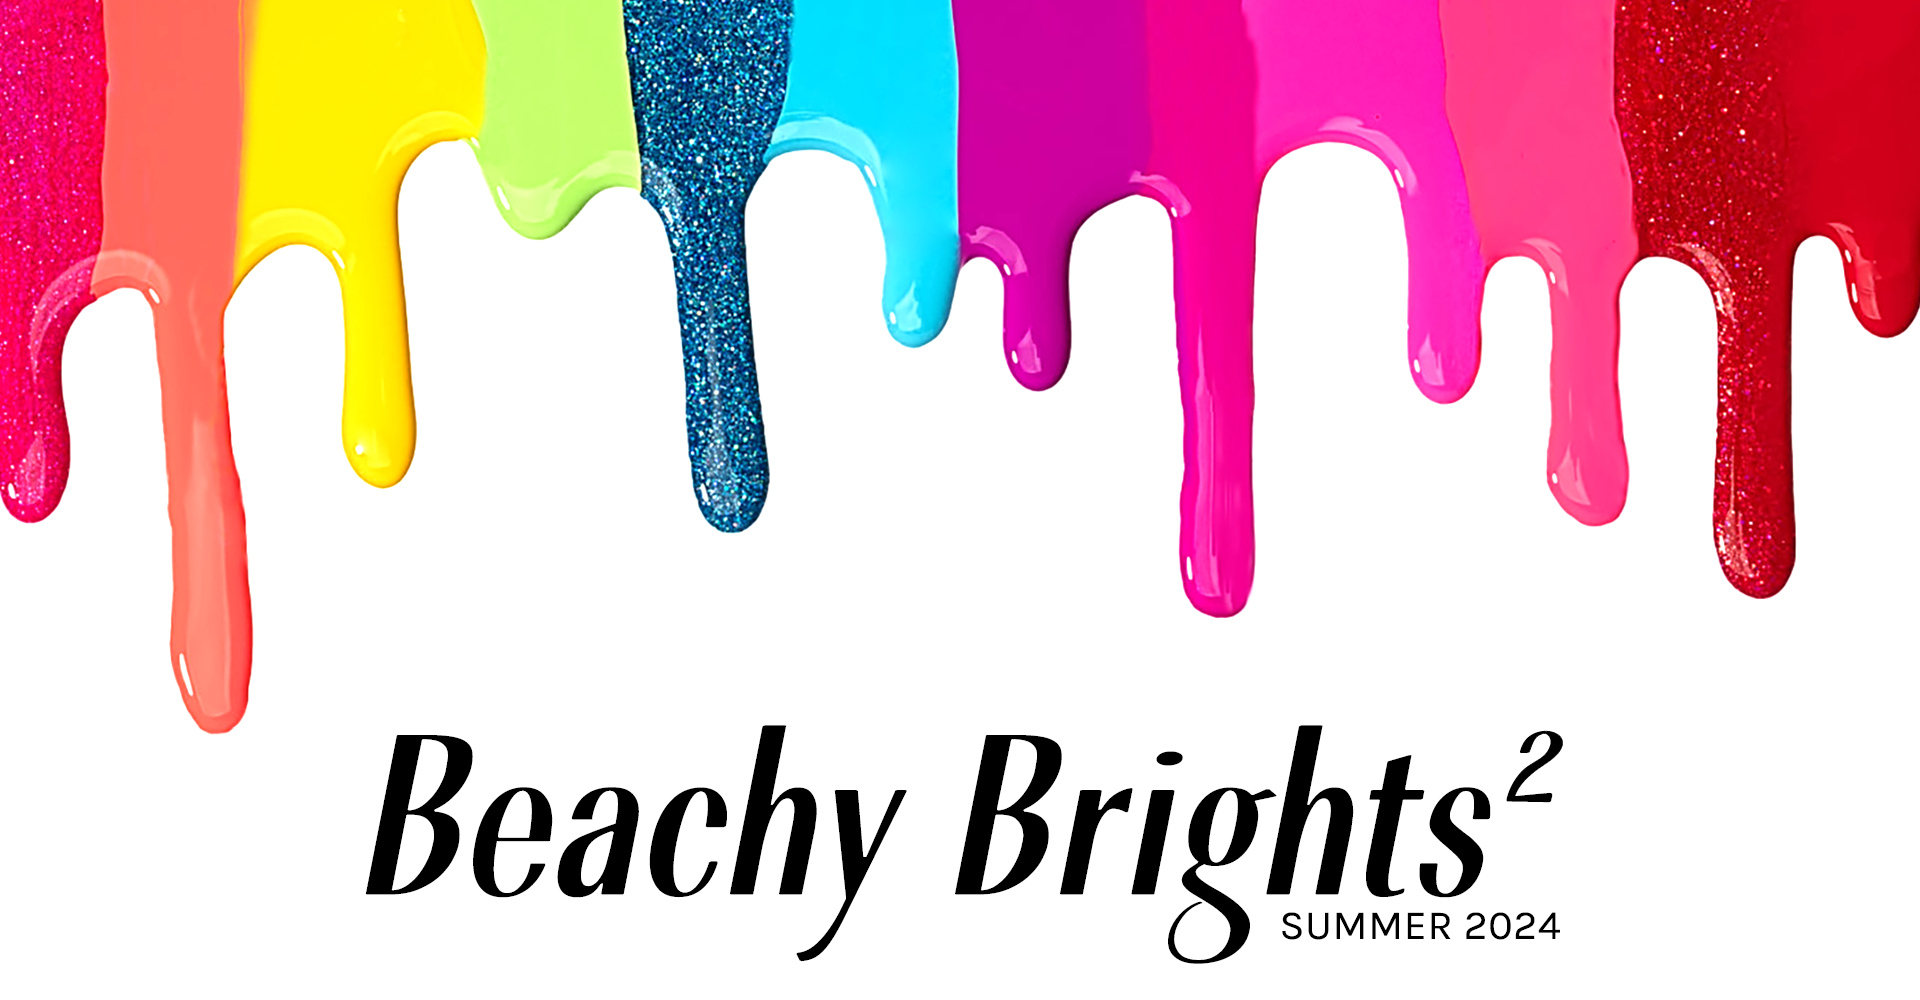 Beachy Brights 2 Summer 2024 Nail Polish Neons